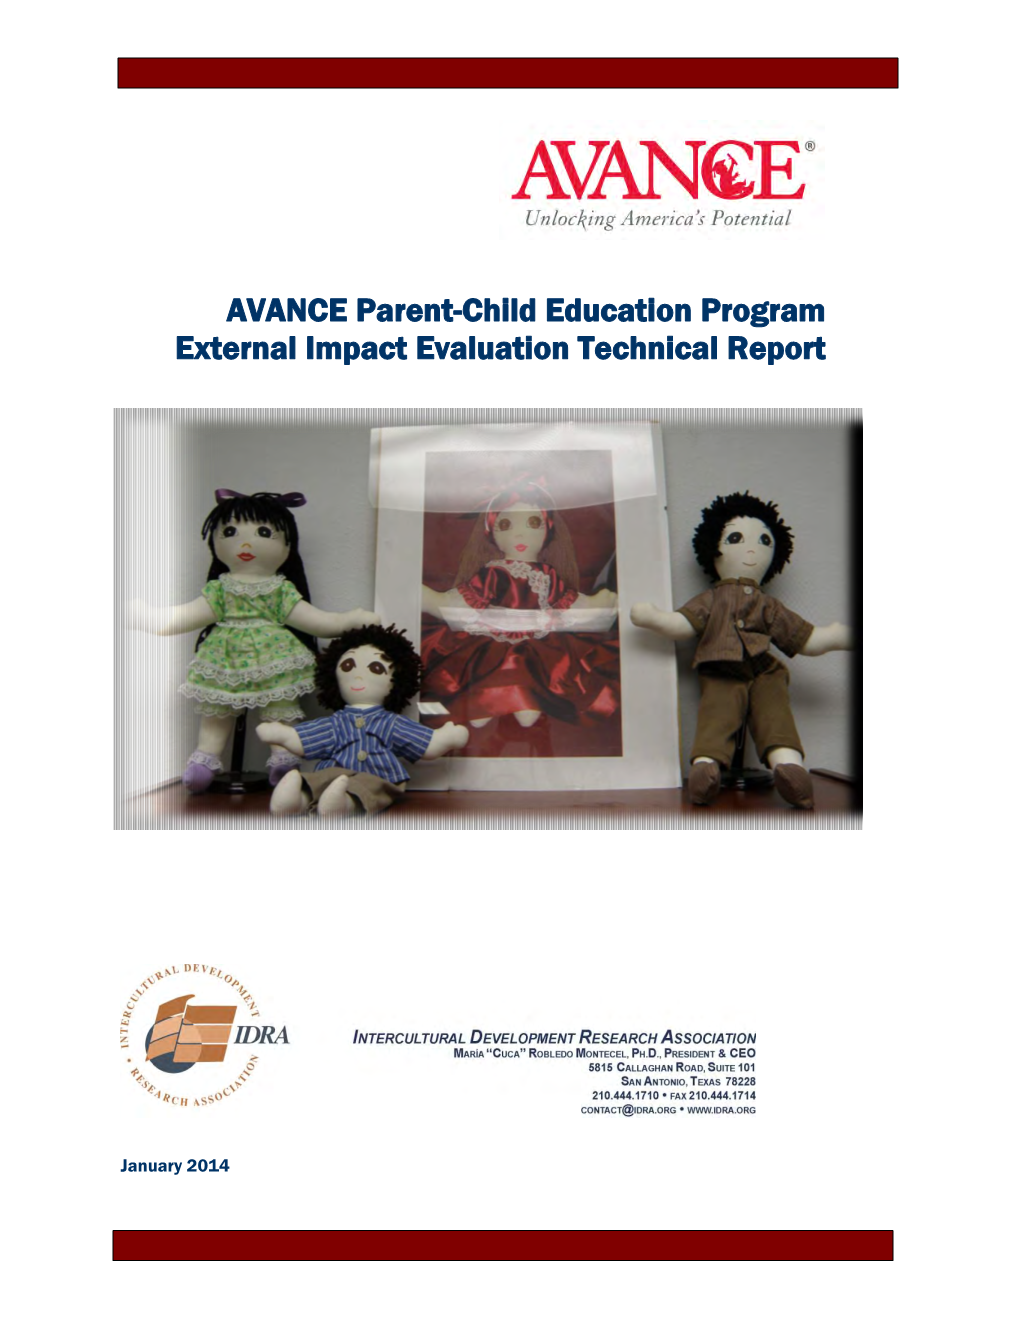 AVANCE Parent-Child Education Program External Impact Evaluation Technical Report